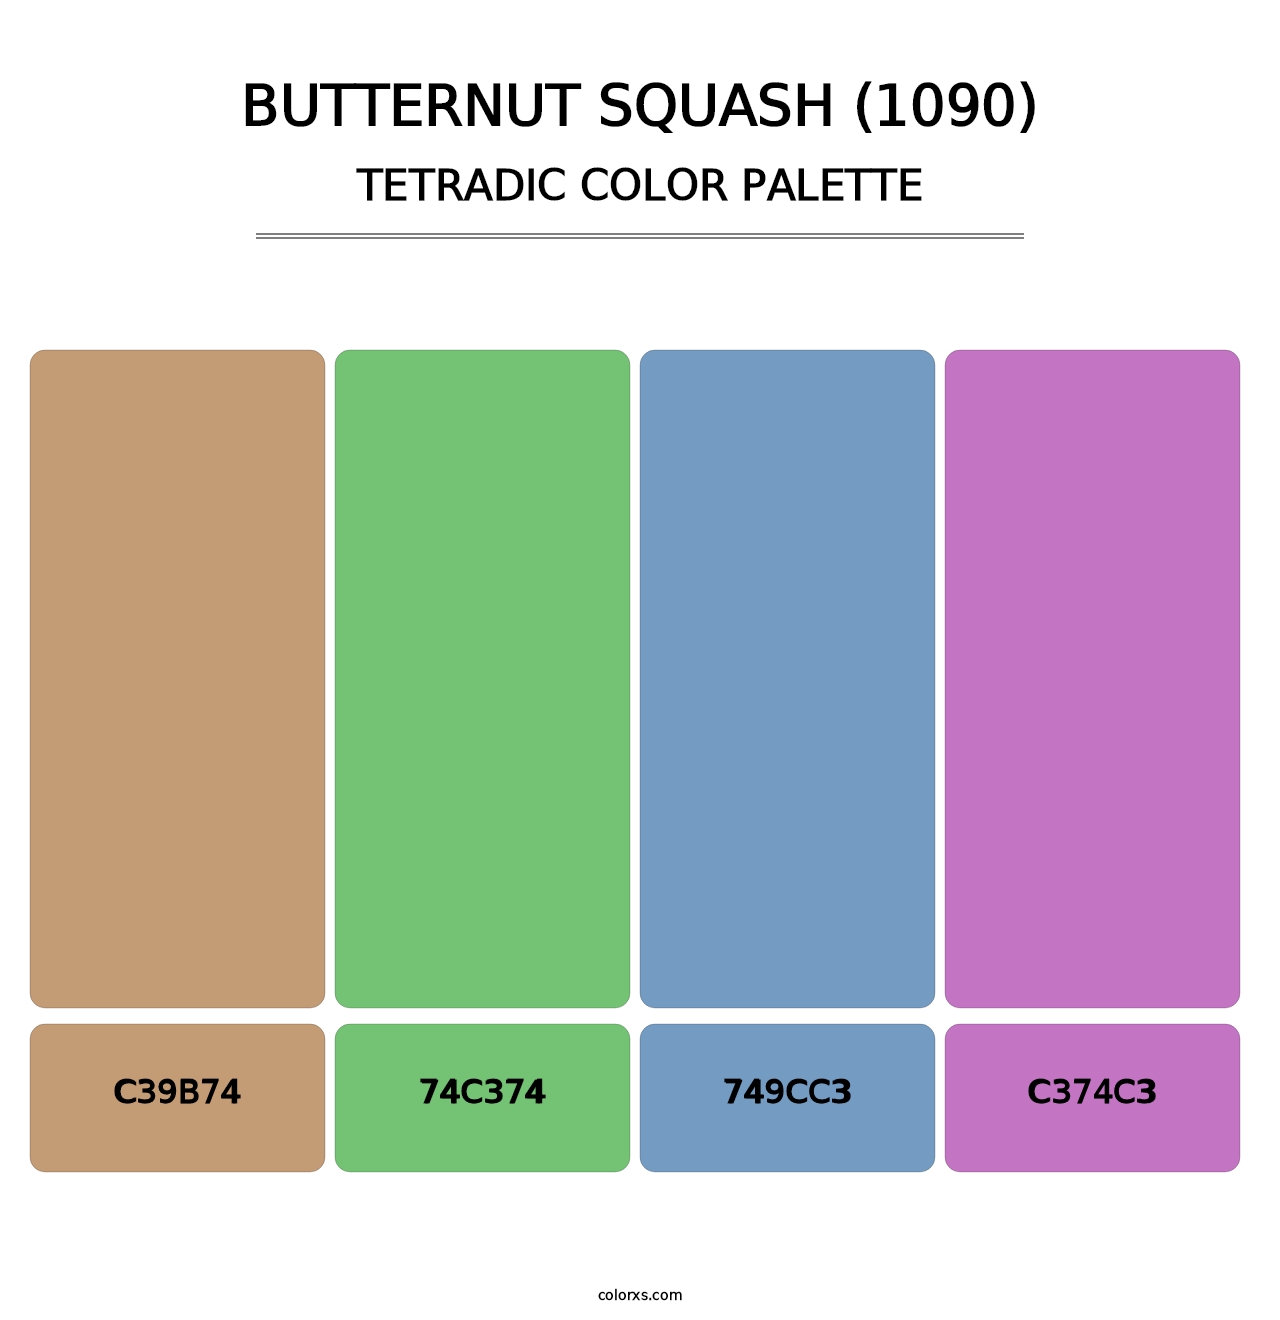 Butternut Squash (1090) - Tetradic Color Palette